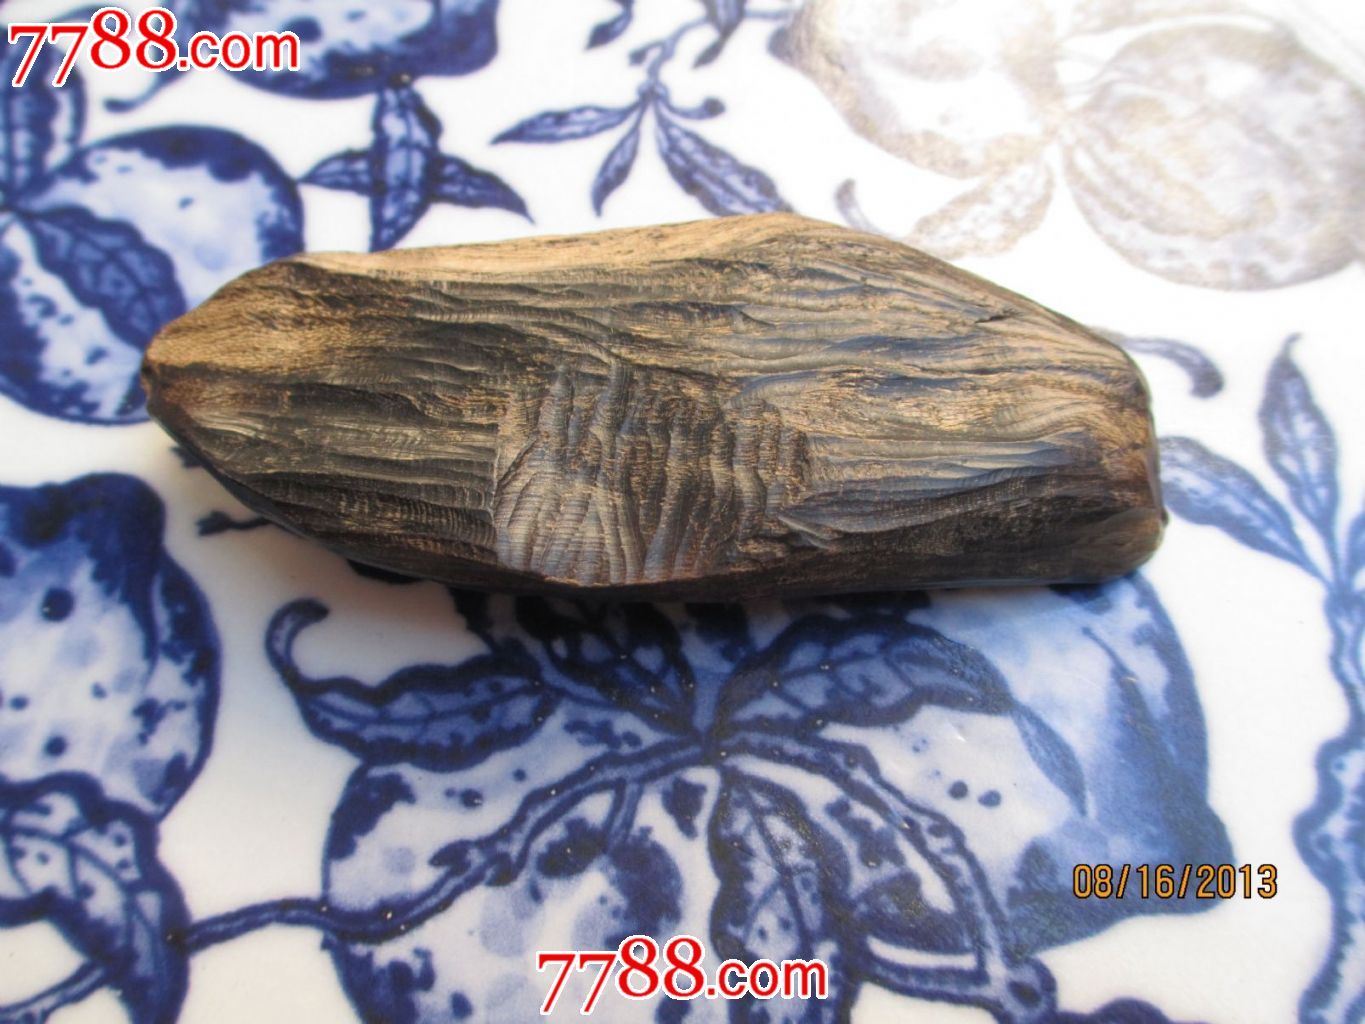 天然石头沉香-价格:446元-se19187235-沉香木